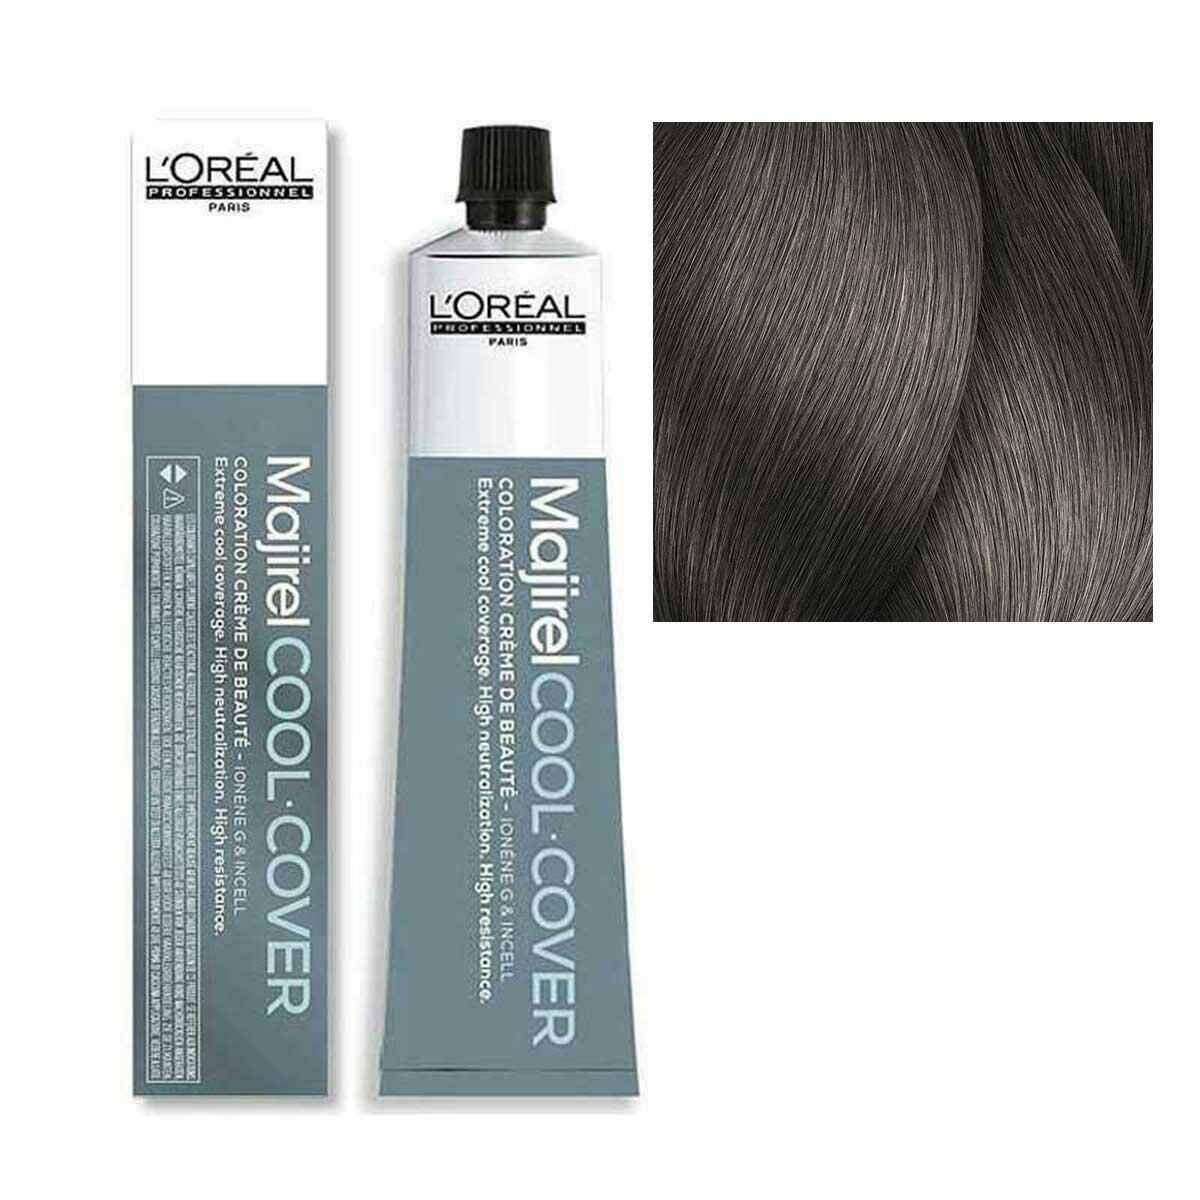 Loreal Majirel Cool Cover Farba do włosów - 7.1 Blond popielaty, chłodne odcienie 50ml